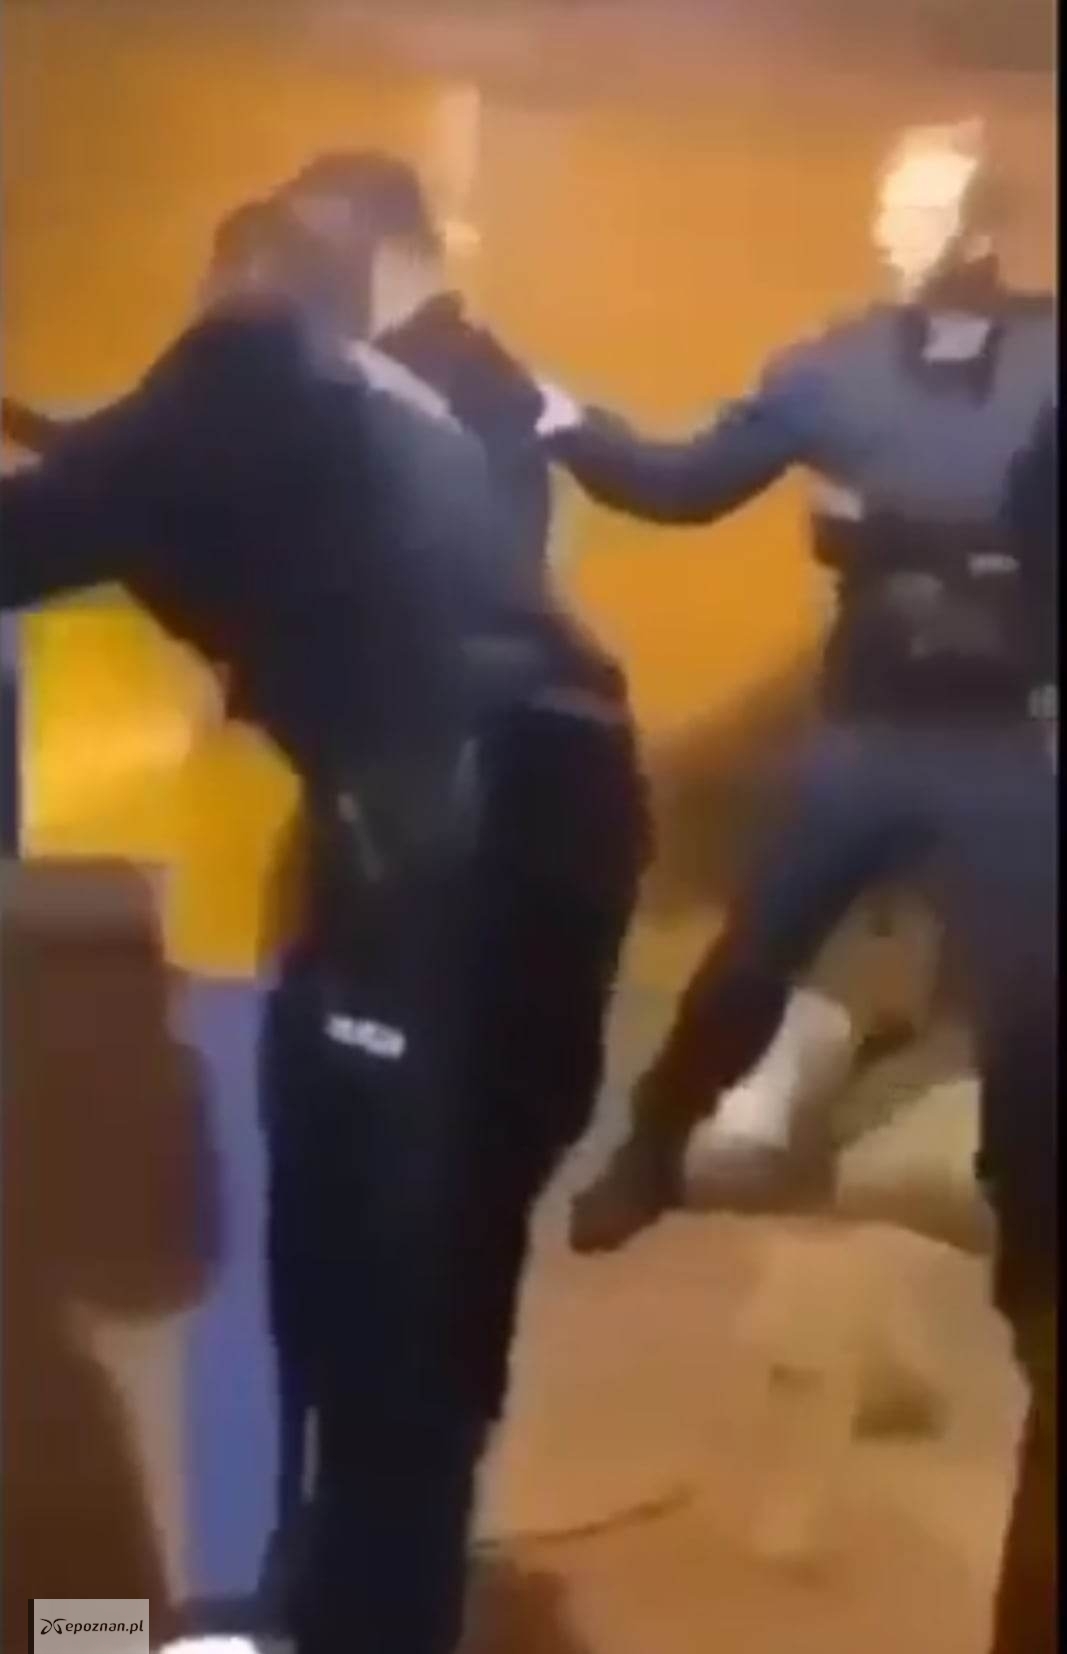 Policjanci próbowali dostać się na strych do kobiety. | fot. Kadr z filmu, który został opublikowany na Facebooku